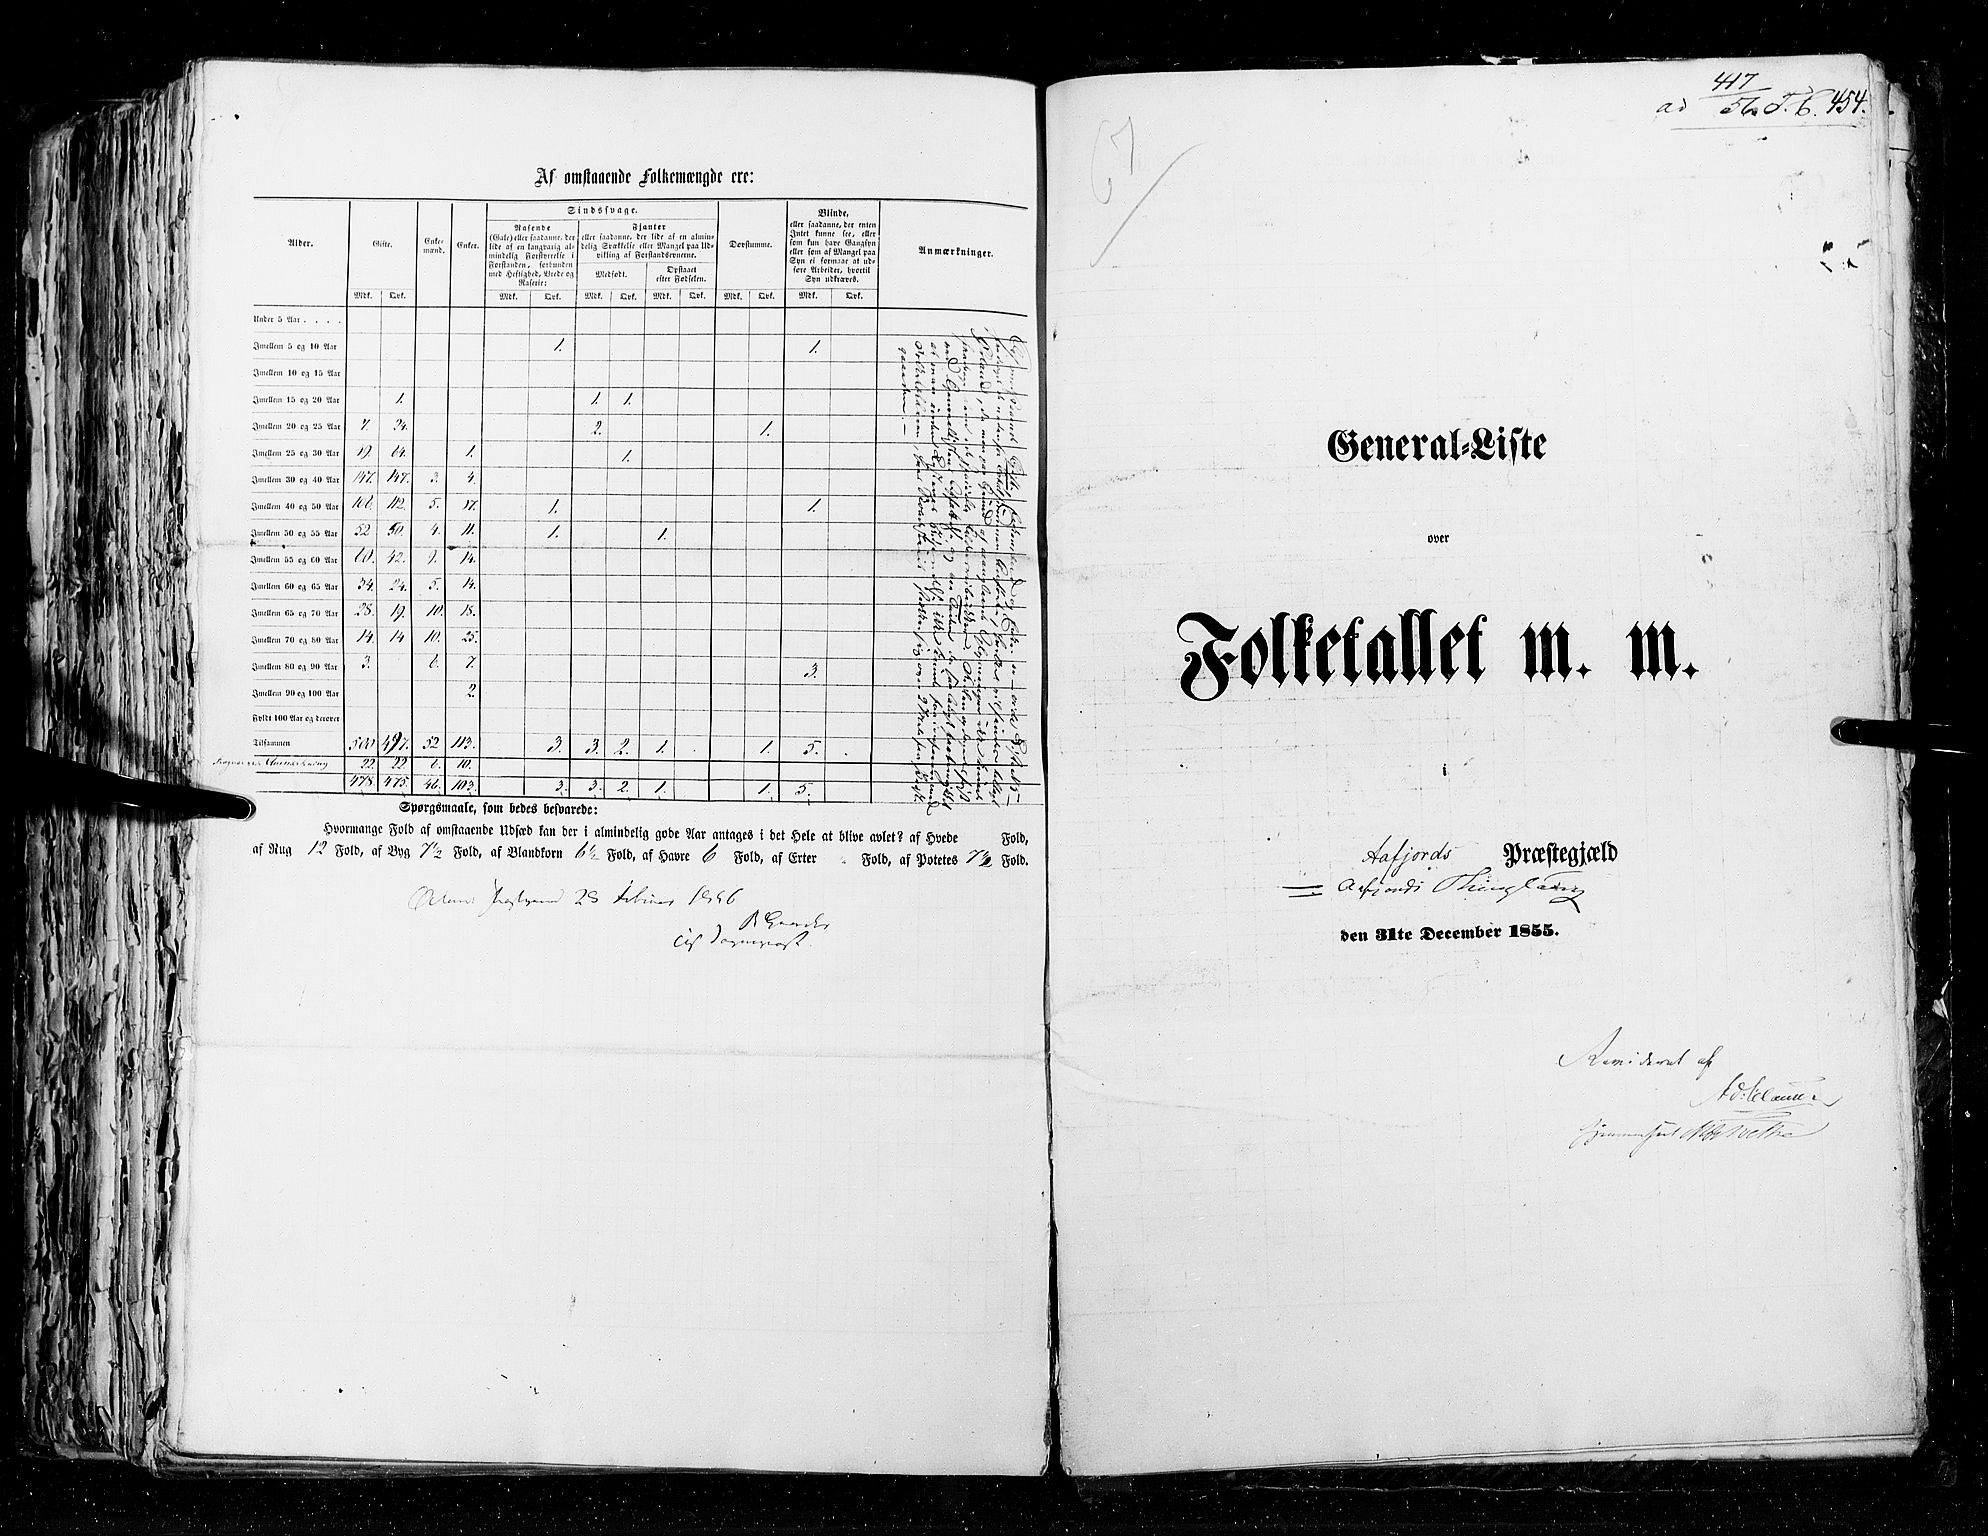 RA, Census 1855, vol. 5: Nordre Bergenhus amt, Romsdal amt og Søndre Trondhjem amt, 1855, p. 454